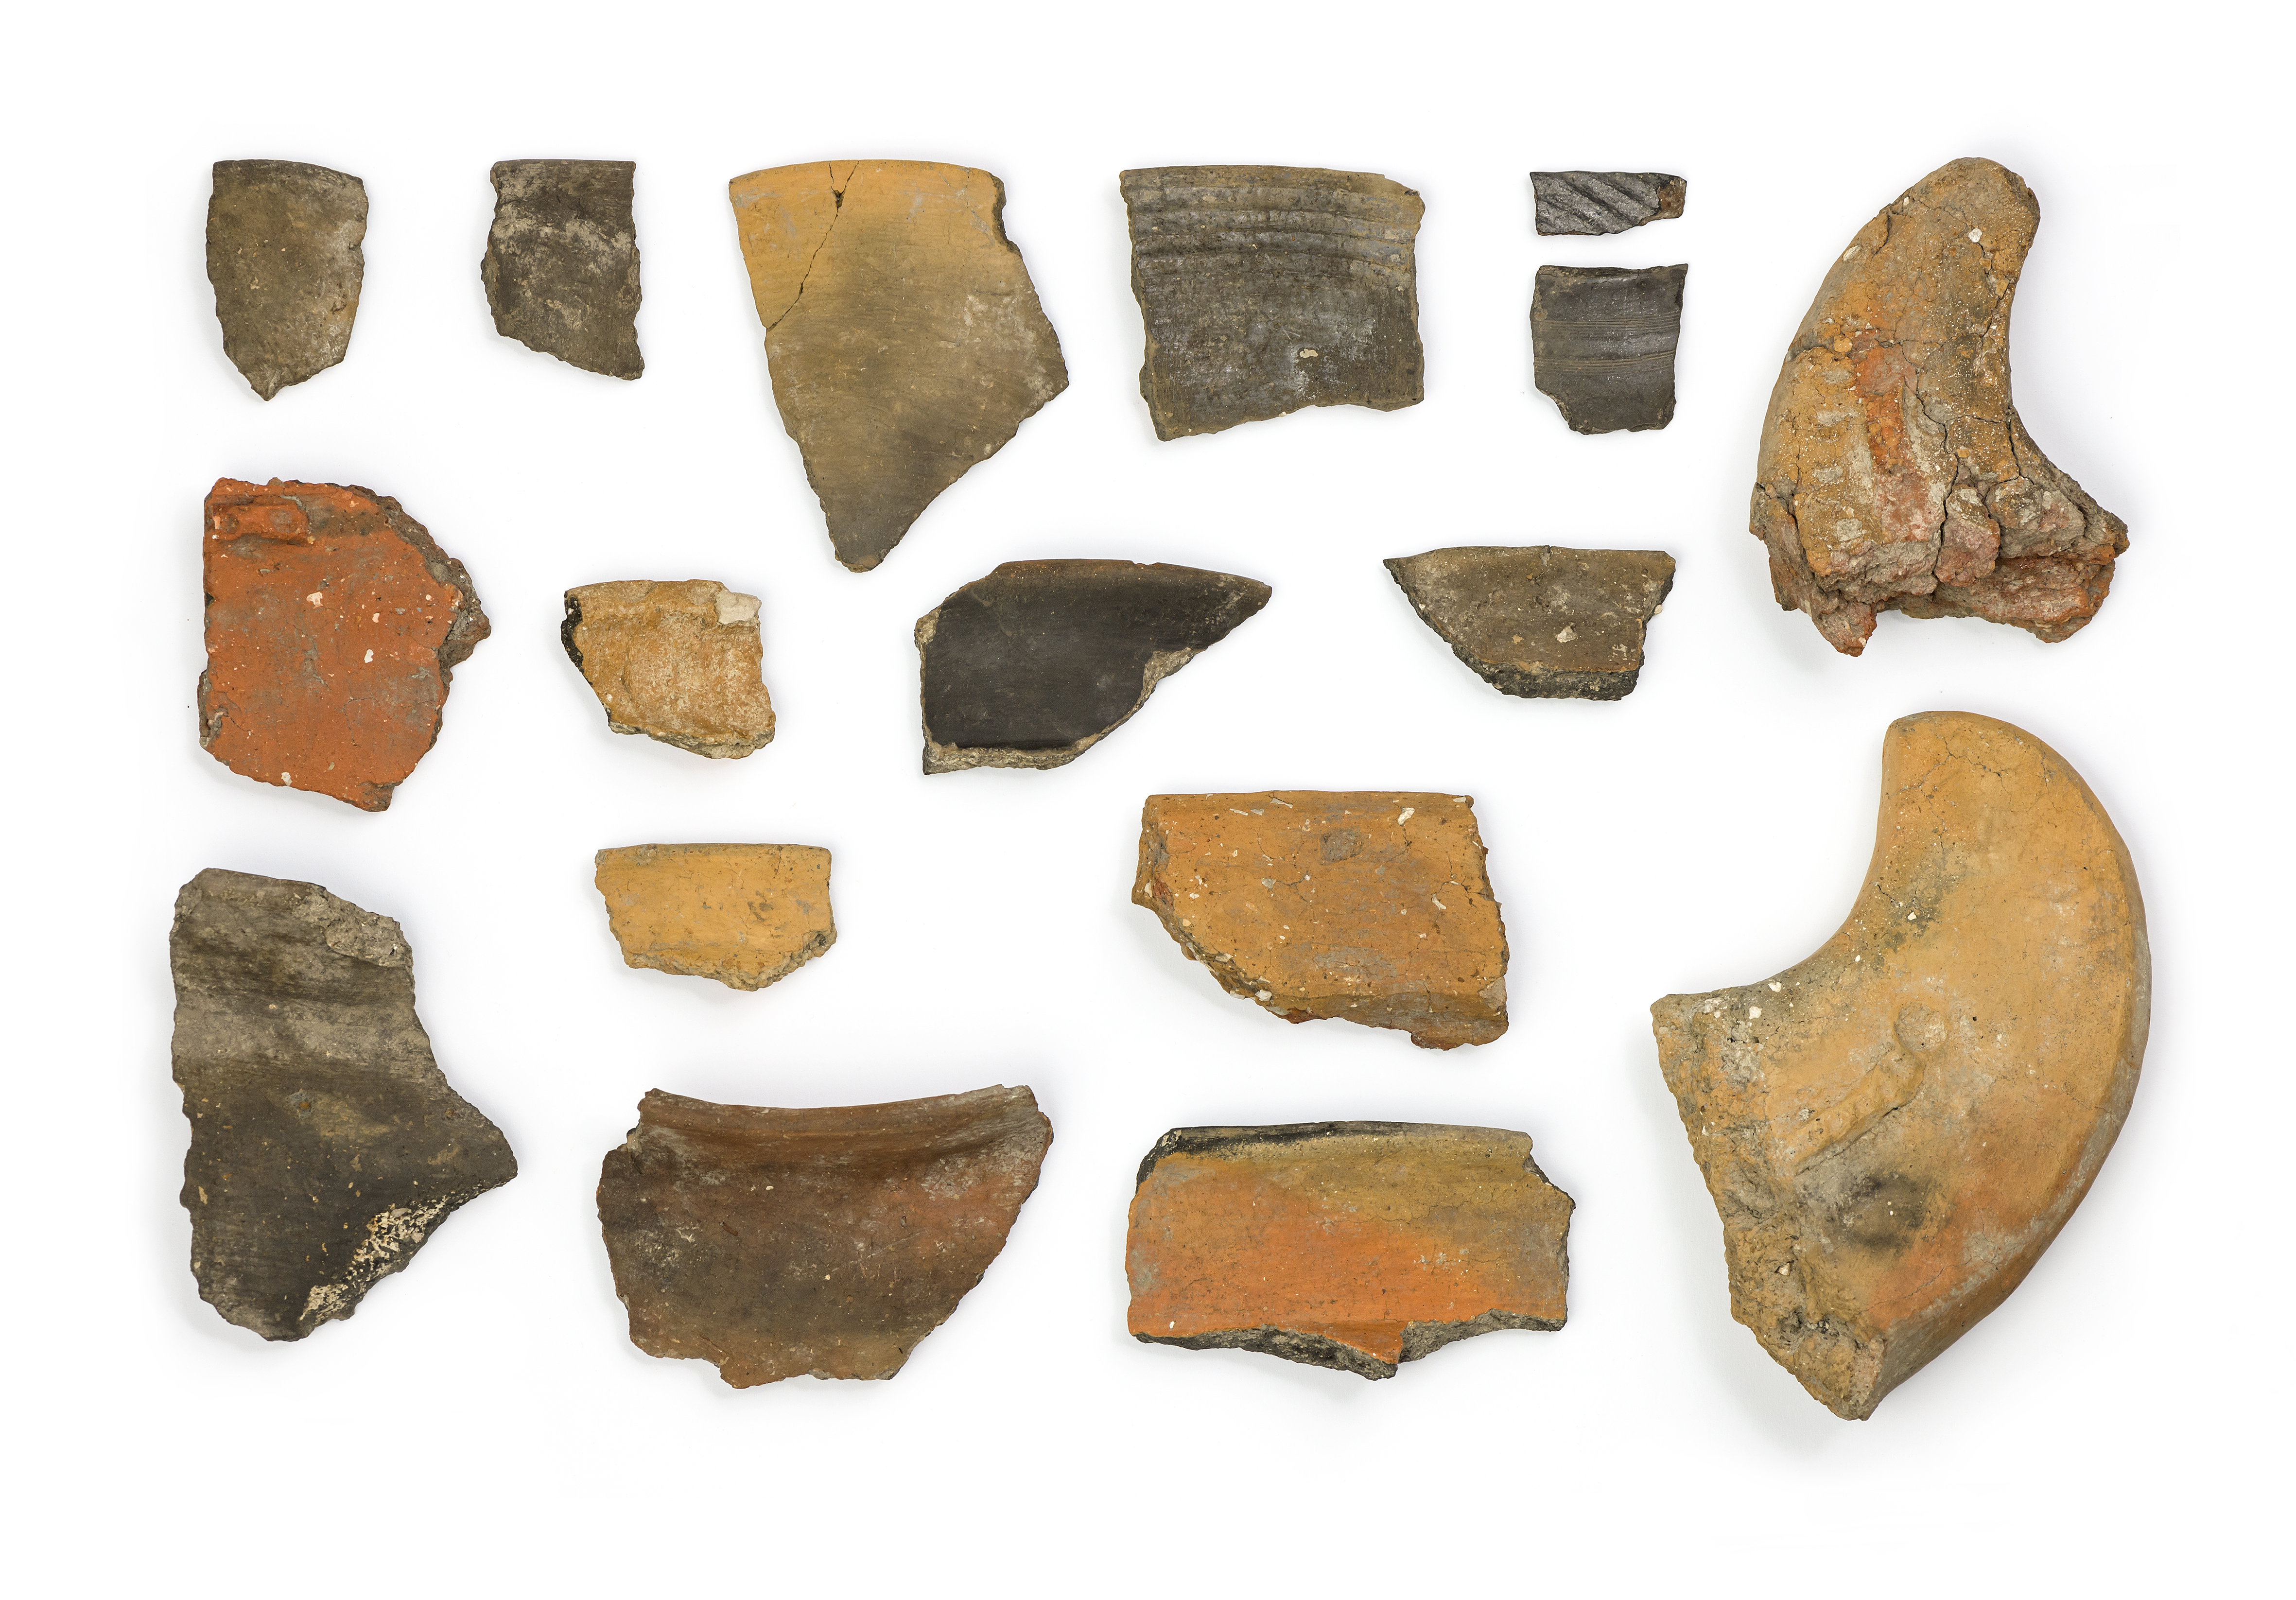  Zu den neu entdeckten Funden in der Flur "Sänder" gehören Bruchstücke von Gefäßen und "Feuerböcken" der spätbronzezeitlichen Urnenfelderkultur (rechts) und der frühen Keltenzeit (links). Foto: Katja Bode 